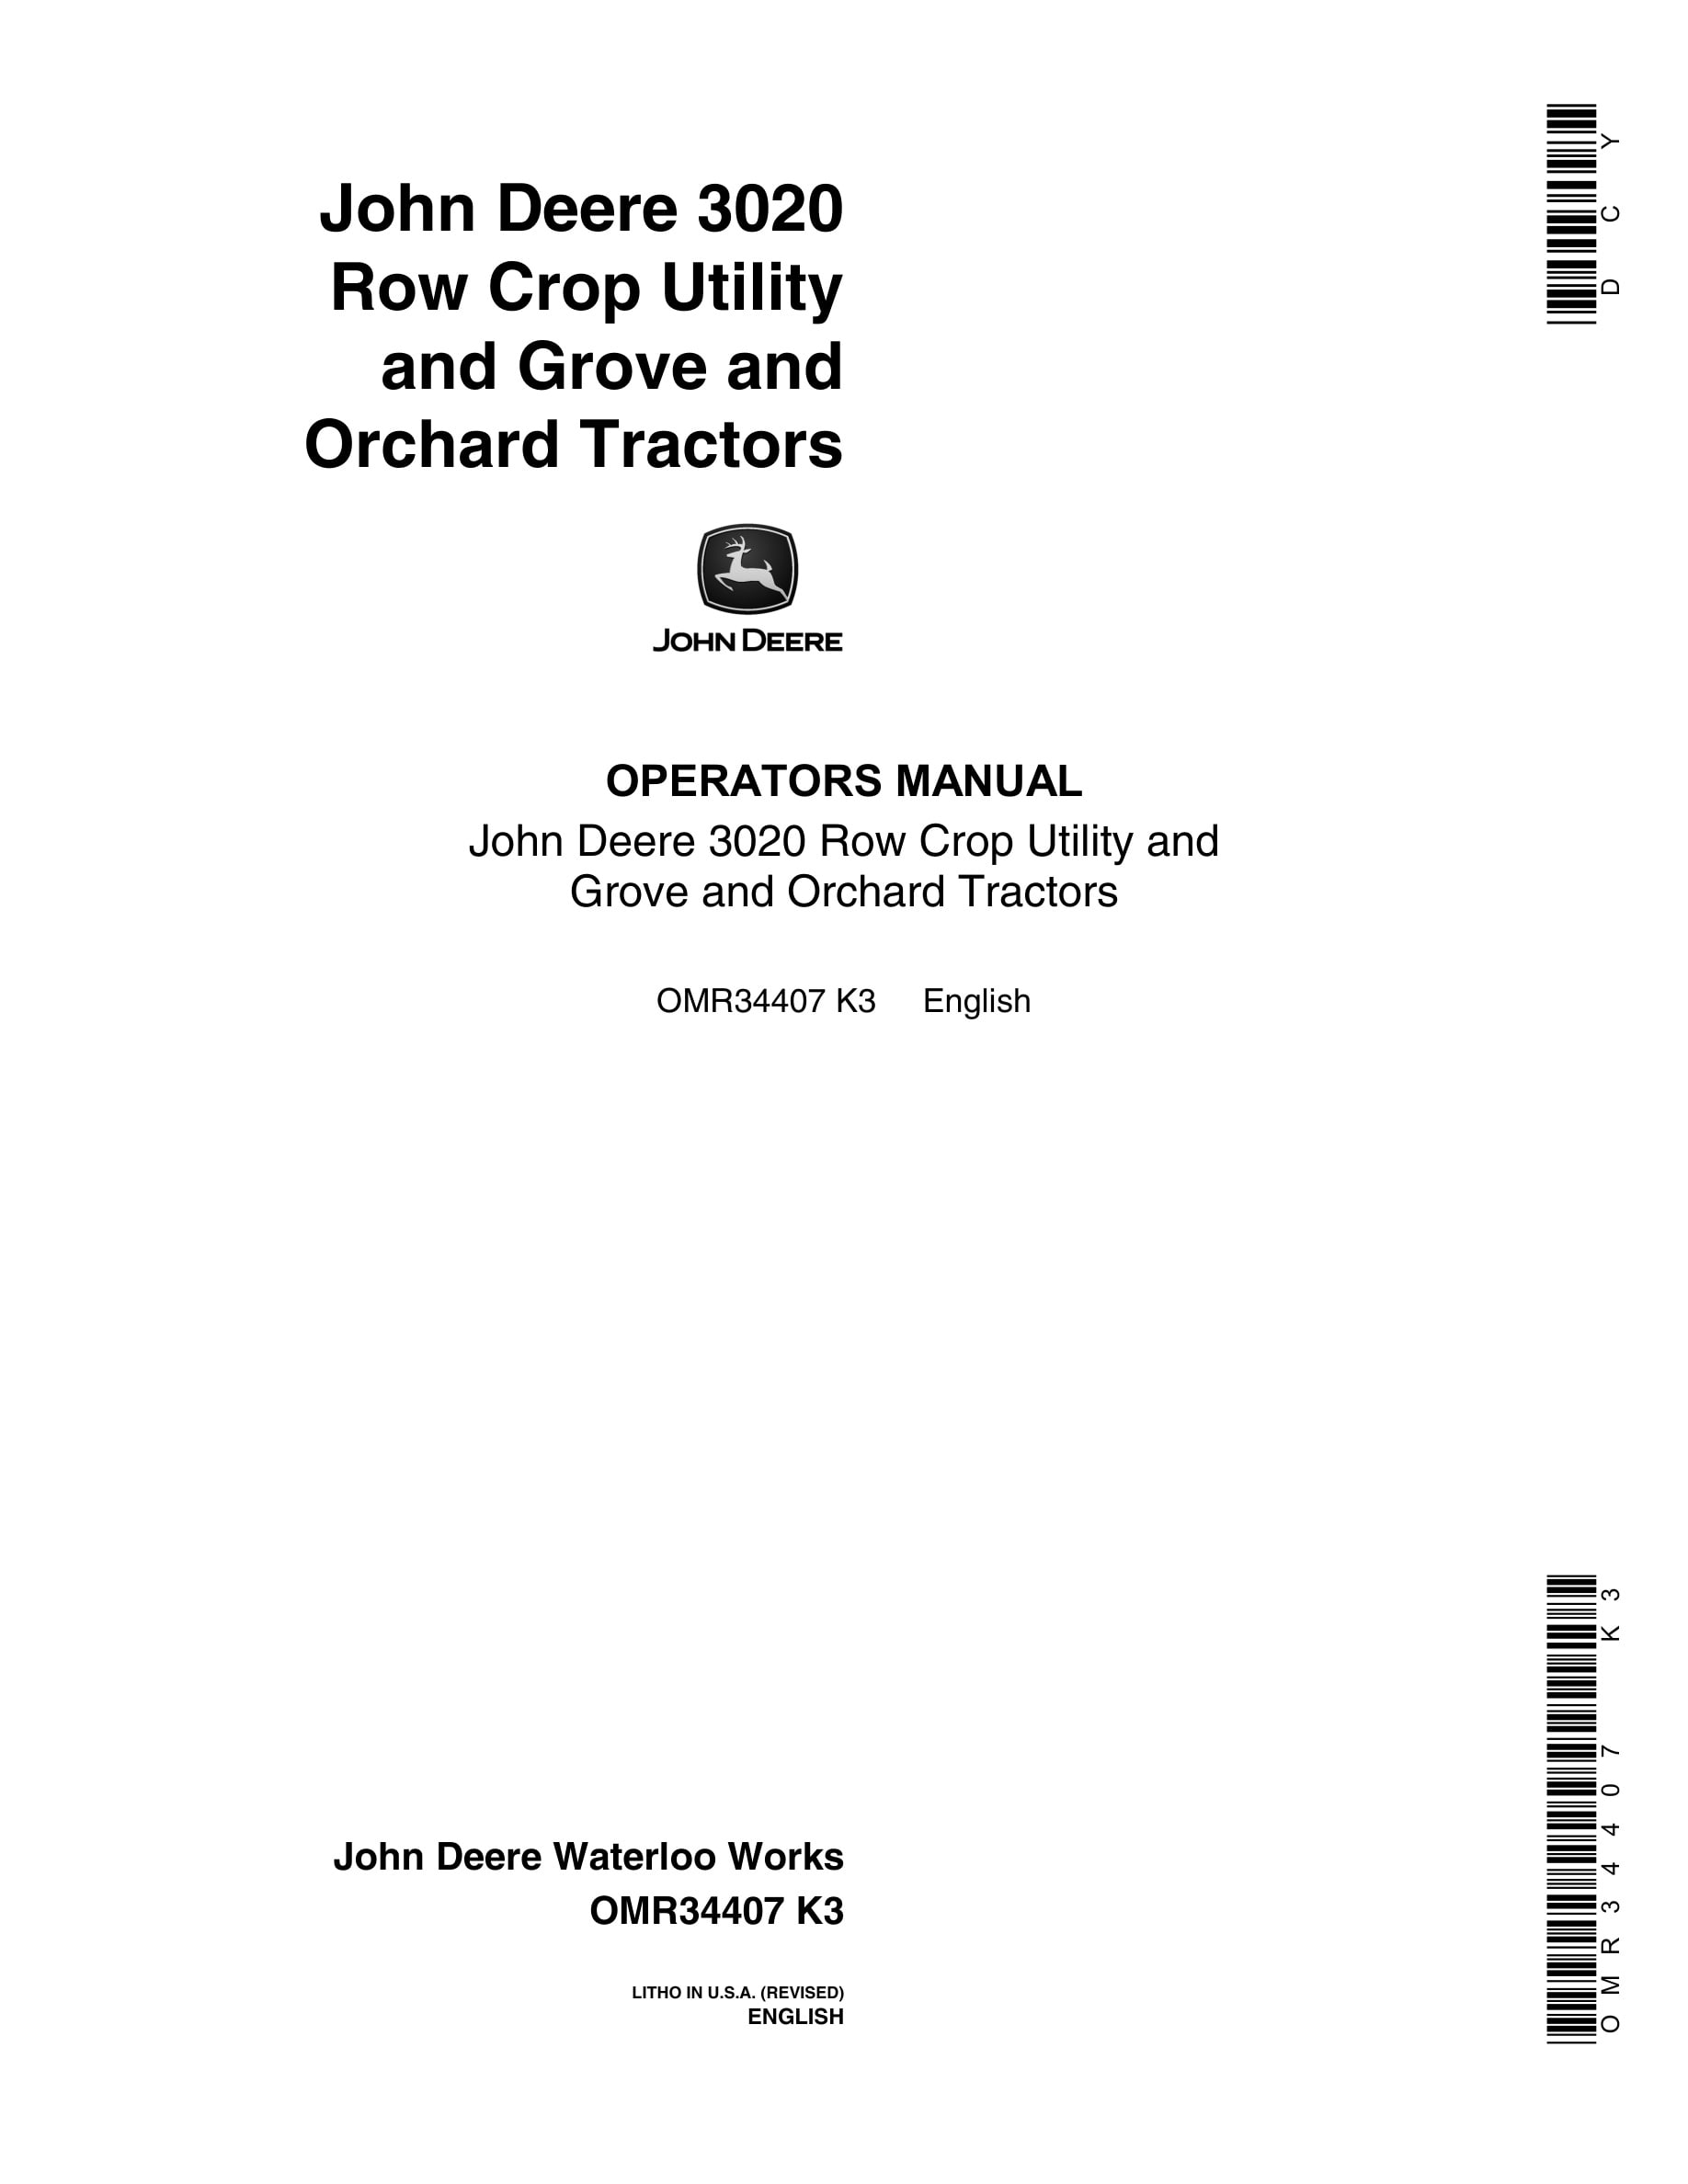 John Deere 3020 Tractor Operator Manual OMR34407-1